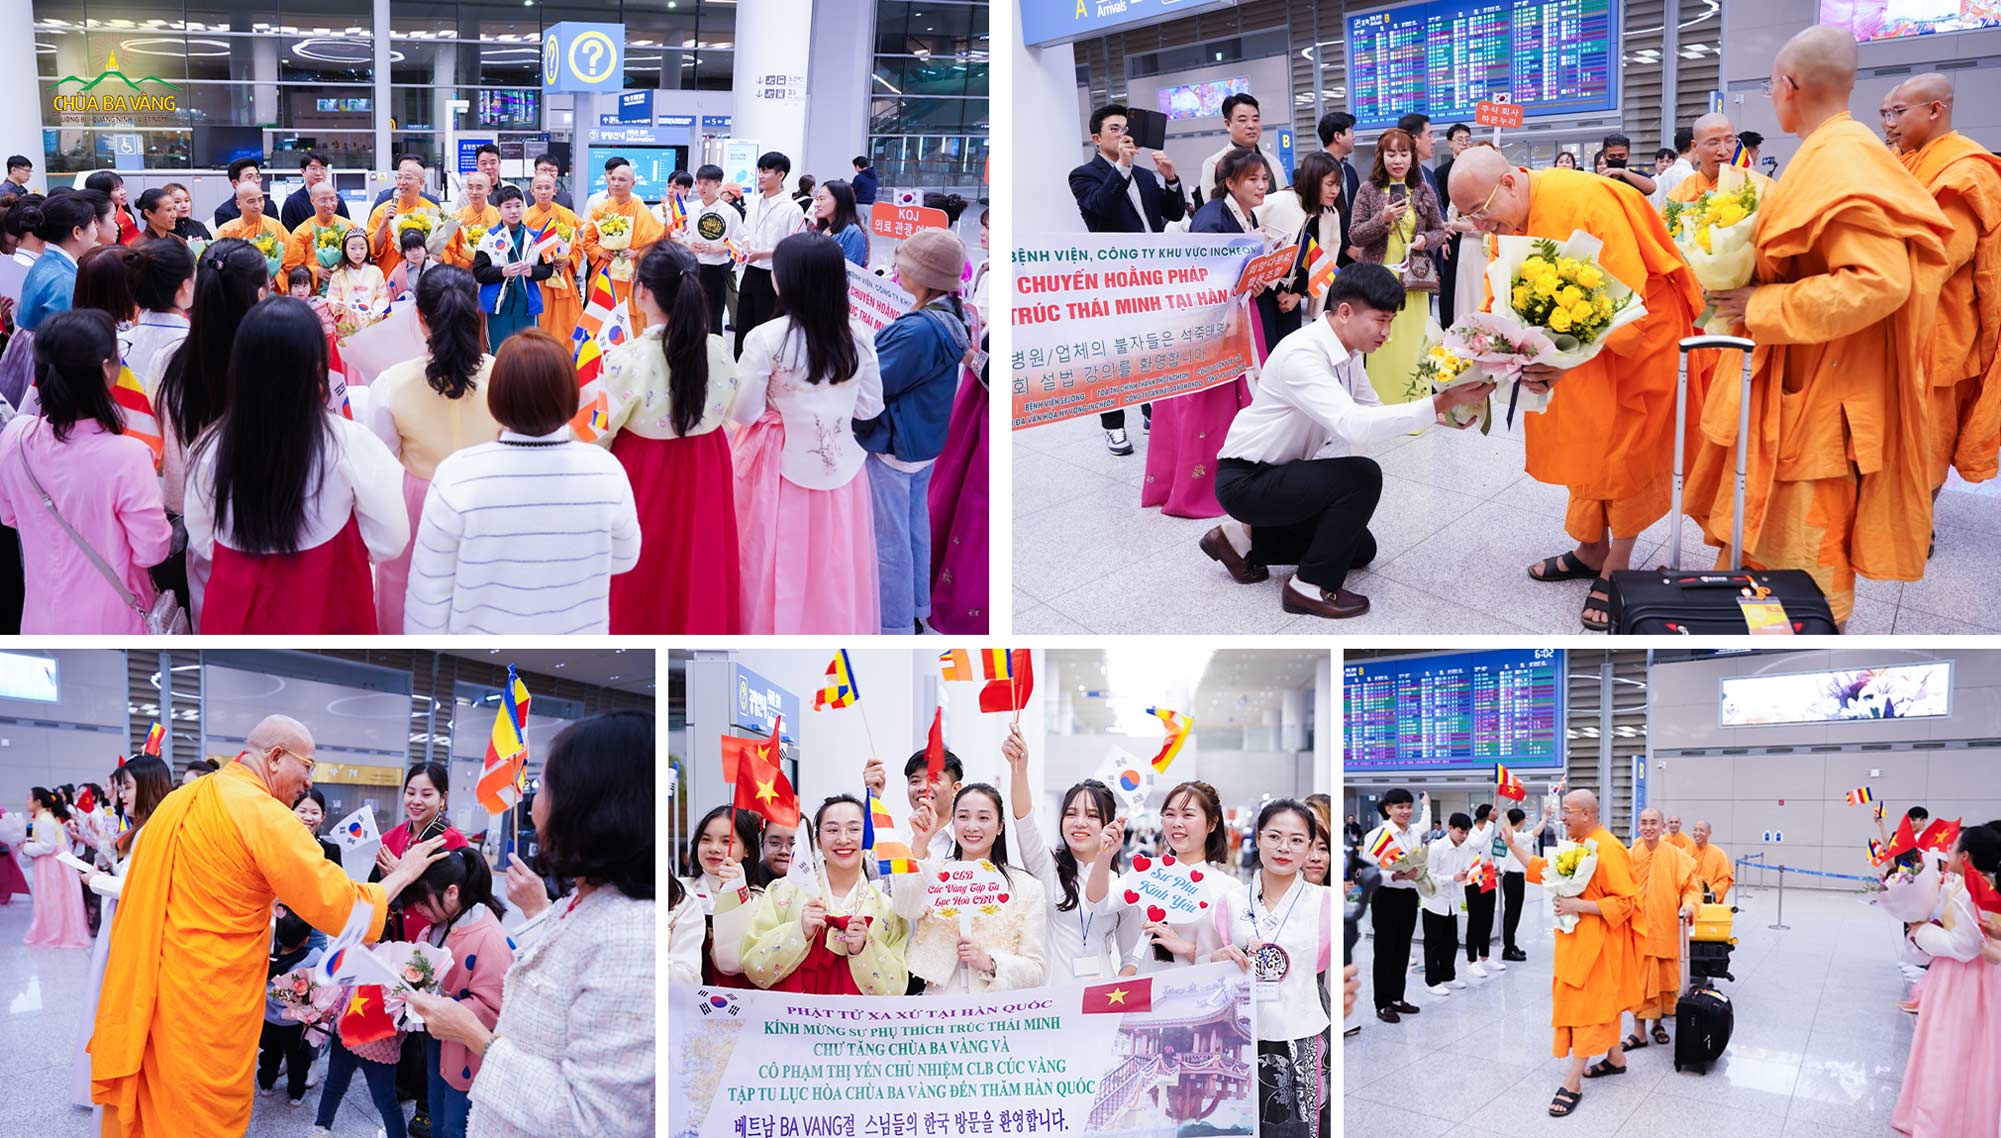 Phật tử Việt Nam và các công ty Hàn Quốc đón chào Thầy Thích Trúc Thái Minh cùng phái đoàn